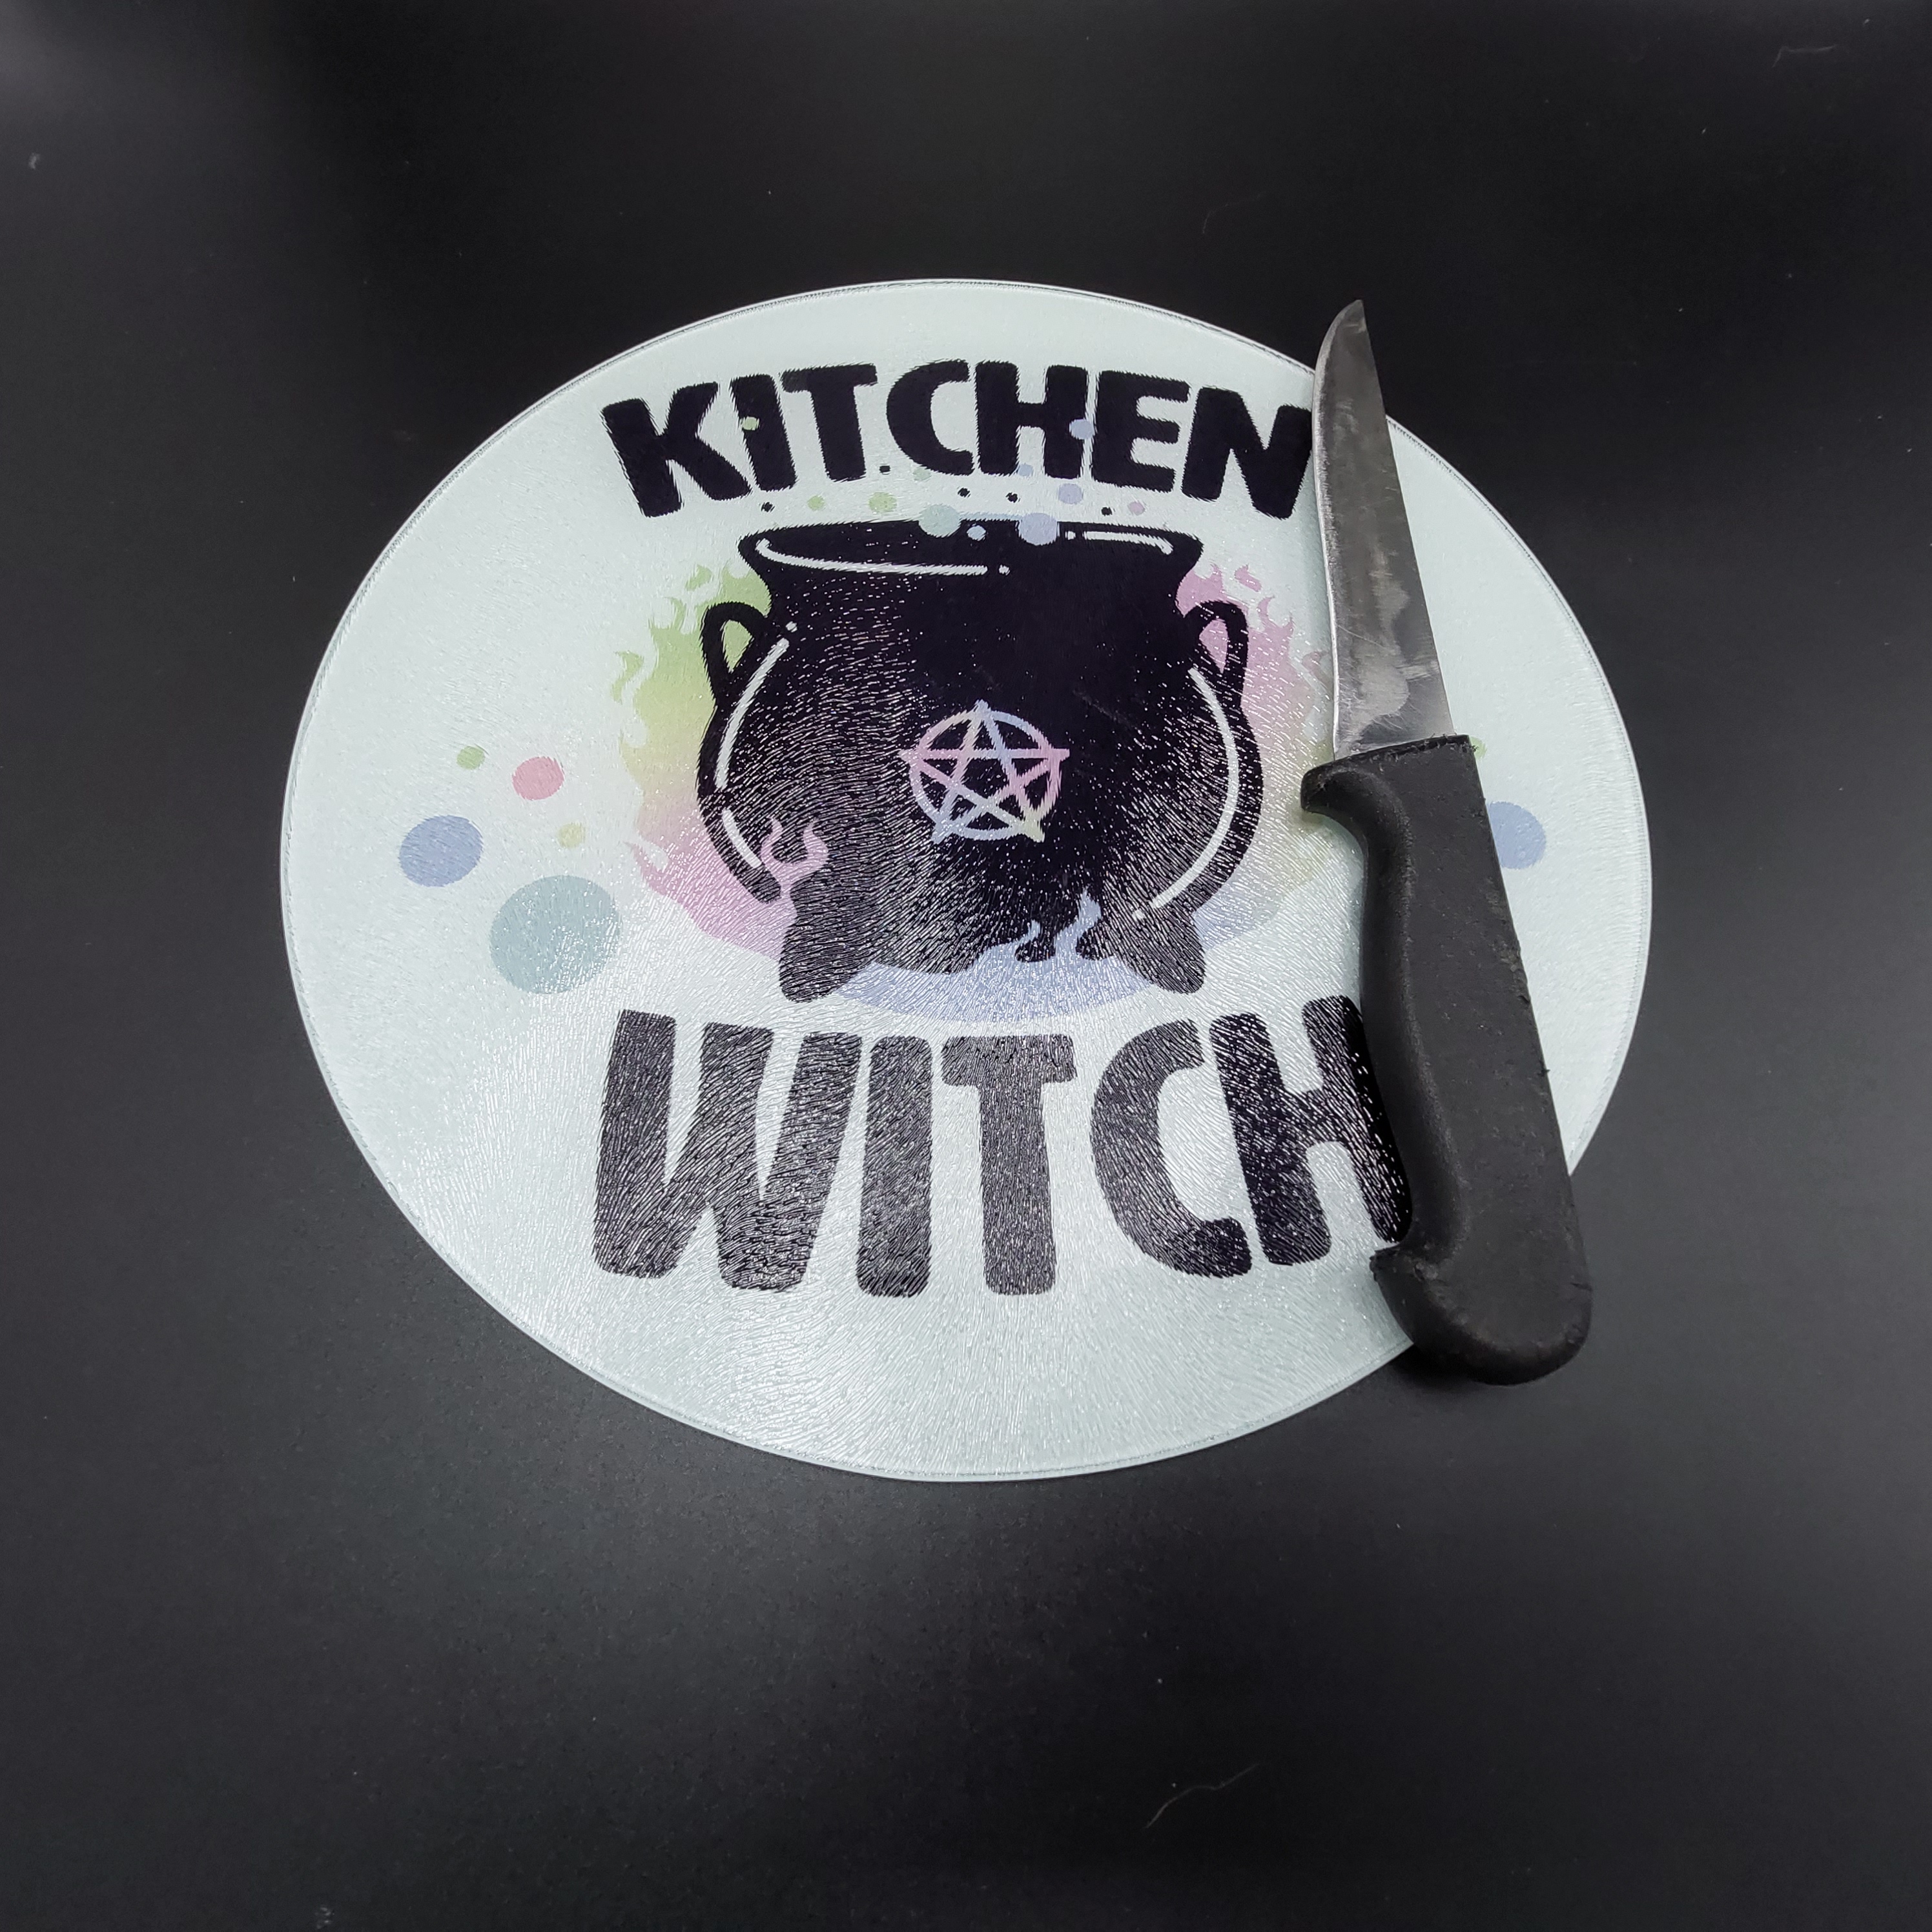 Snijplank 'Kitchen Witch'